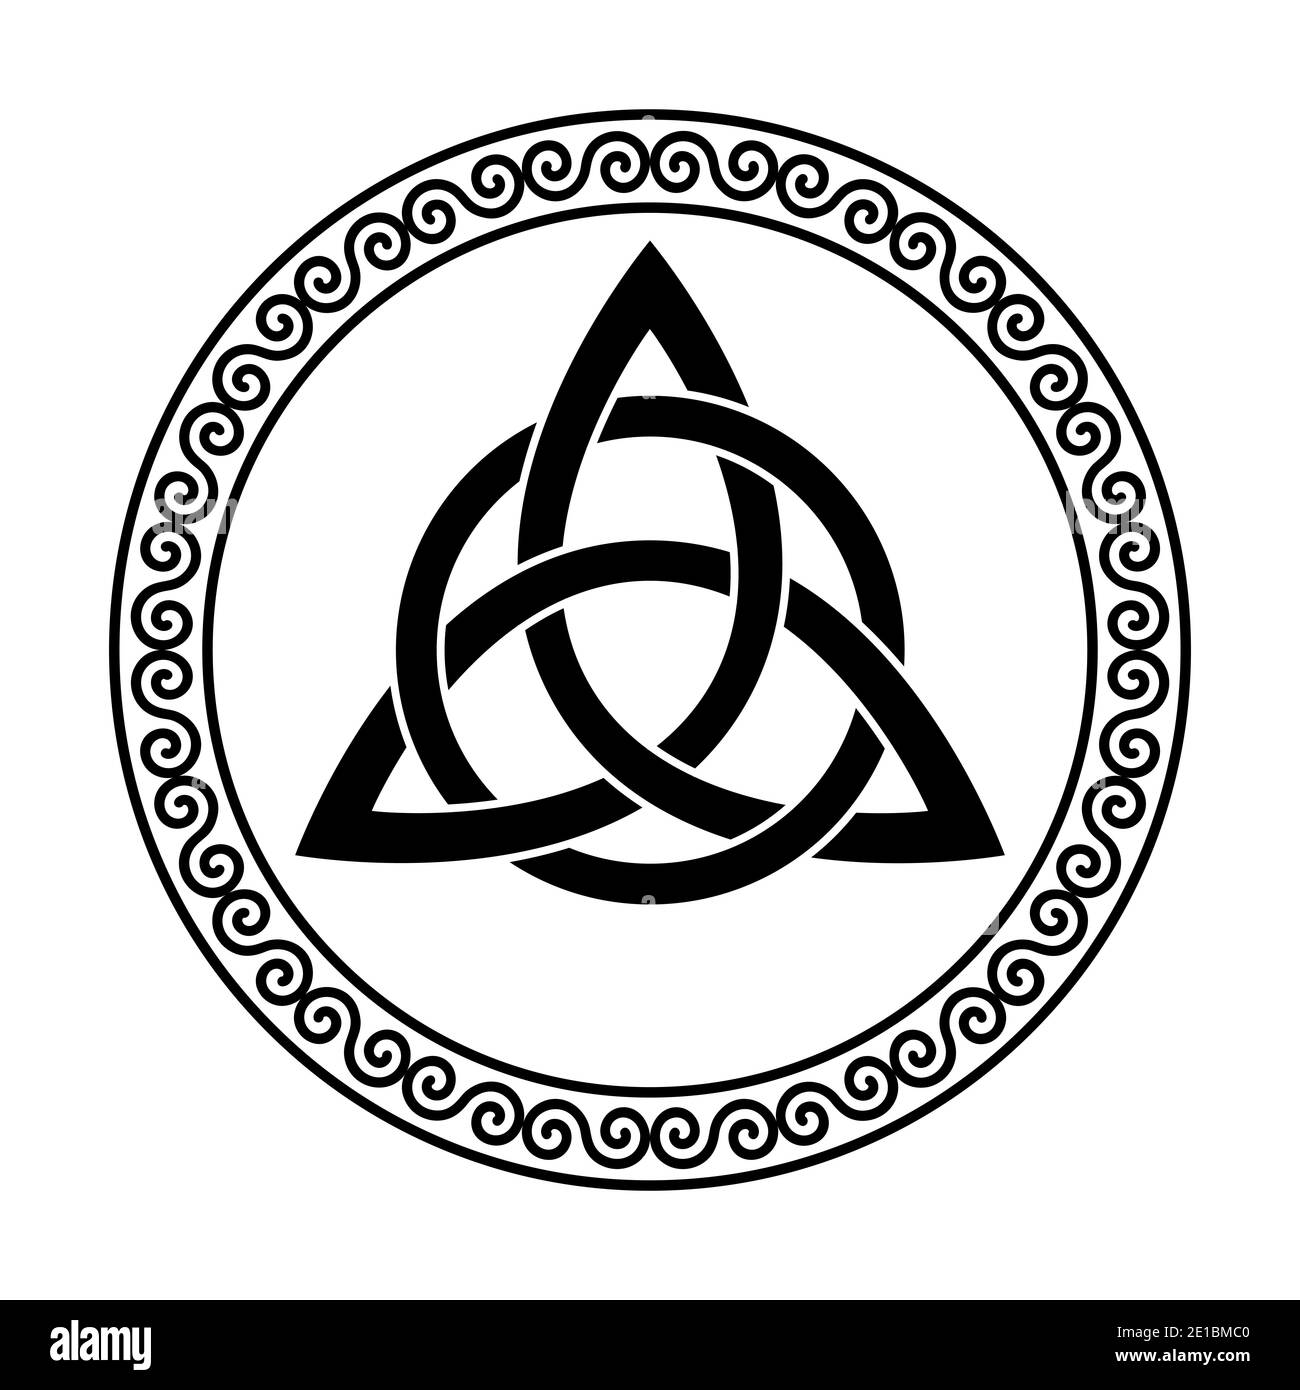 Triquetra avec cercle dans un cadre circulaire en spirale. Noeud celtique, une figure triangulaire, utilisée dans l'ornementation chrétienne ancienne, entourée de bordure. Banque D'Images